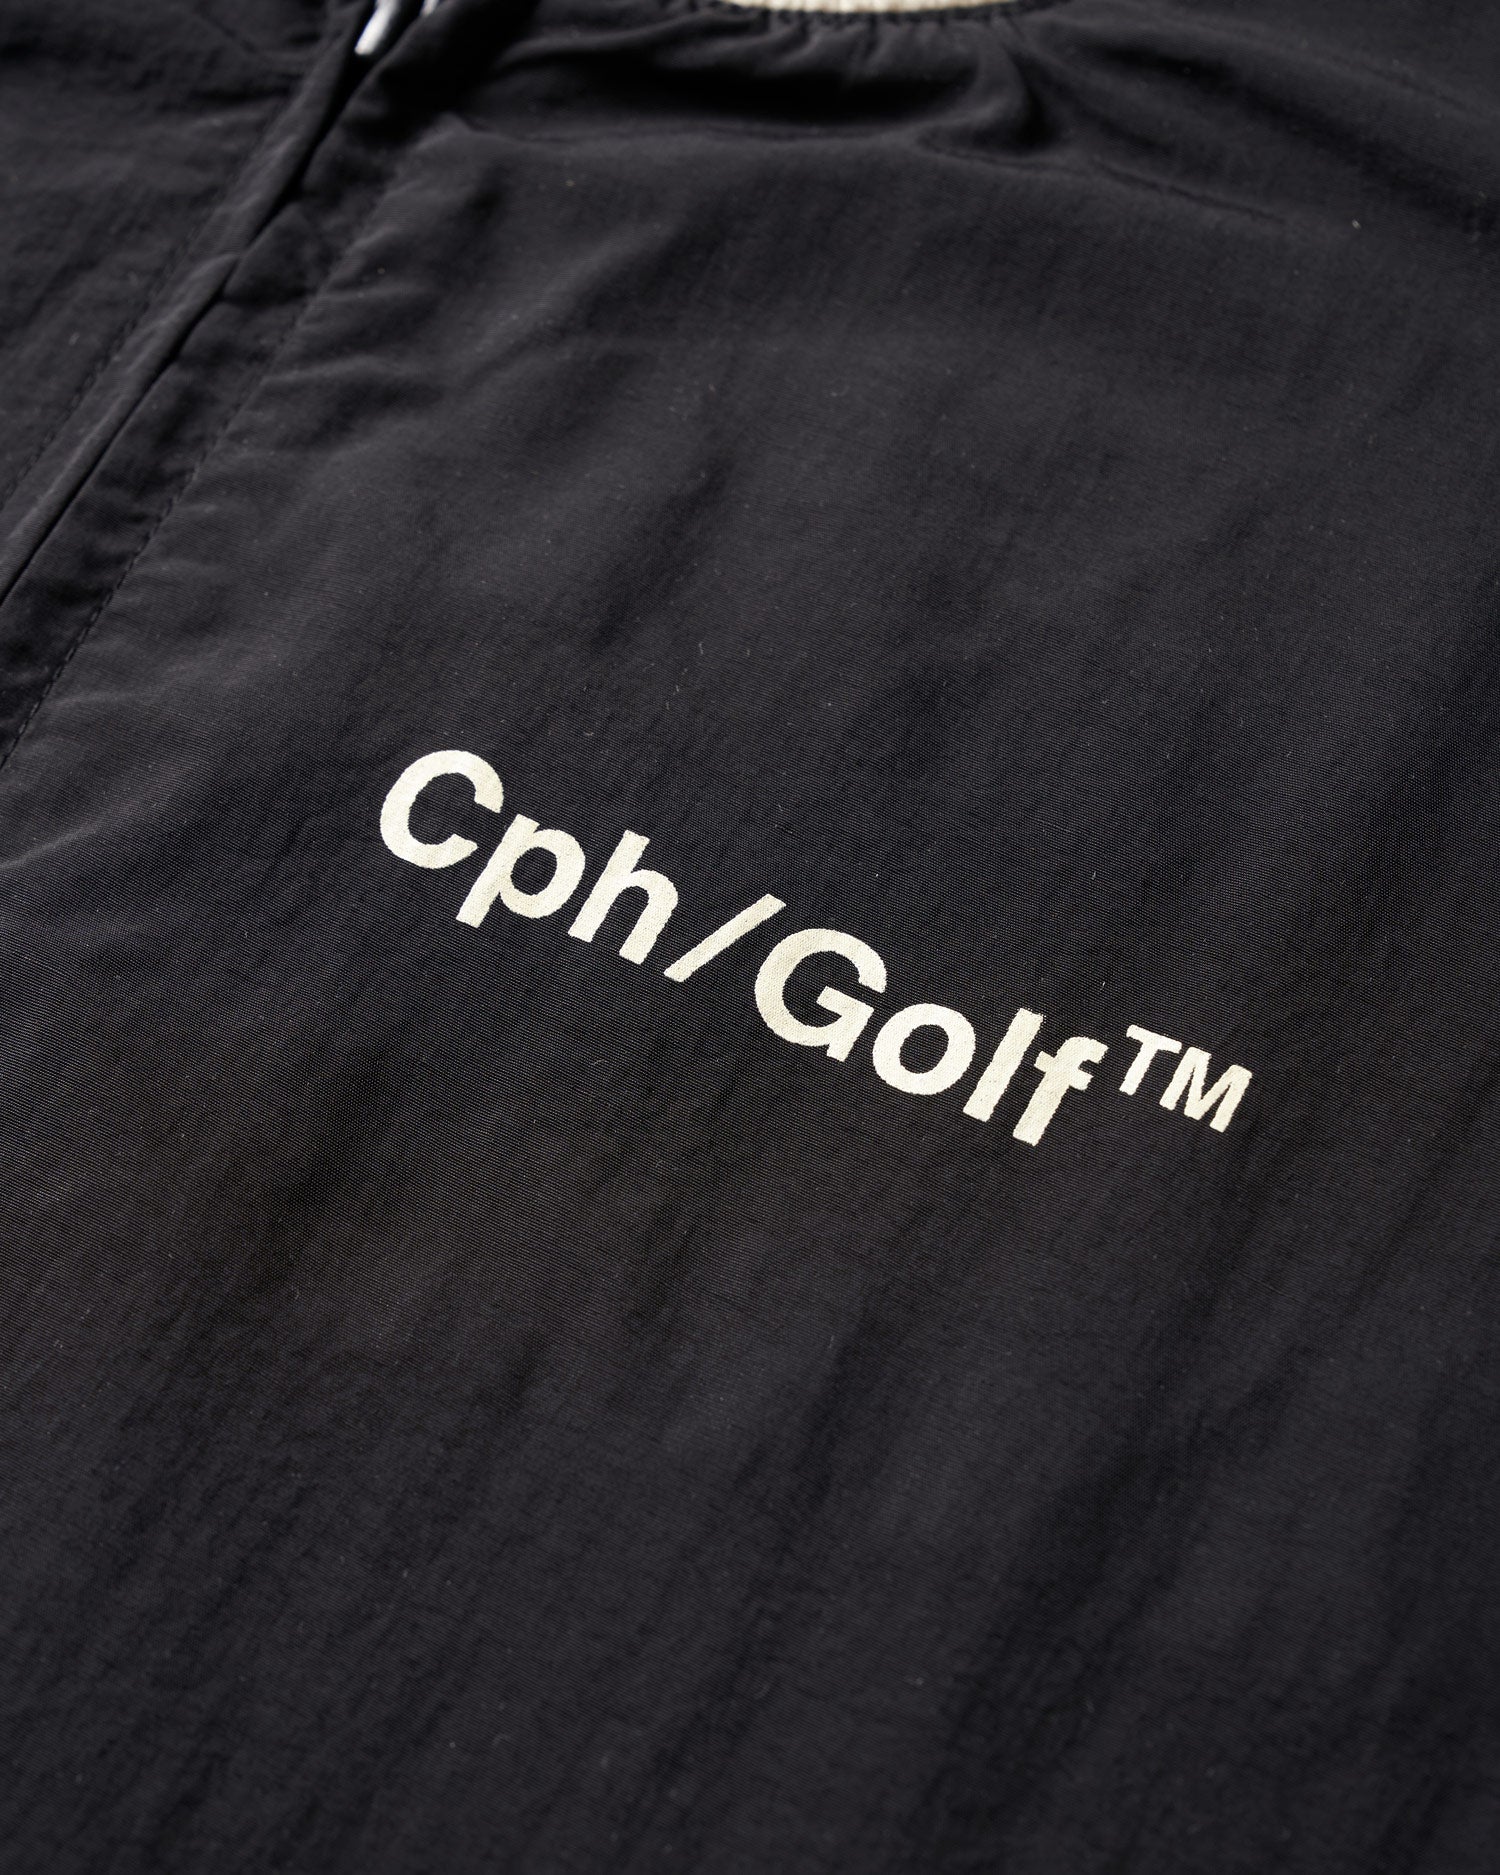 日本販売店 【希少品】CONVERSE GOLF × Cph/Golf ZIP JACKET | tonky.jp